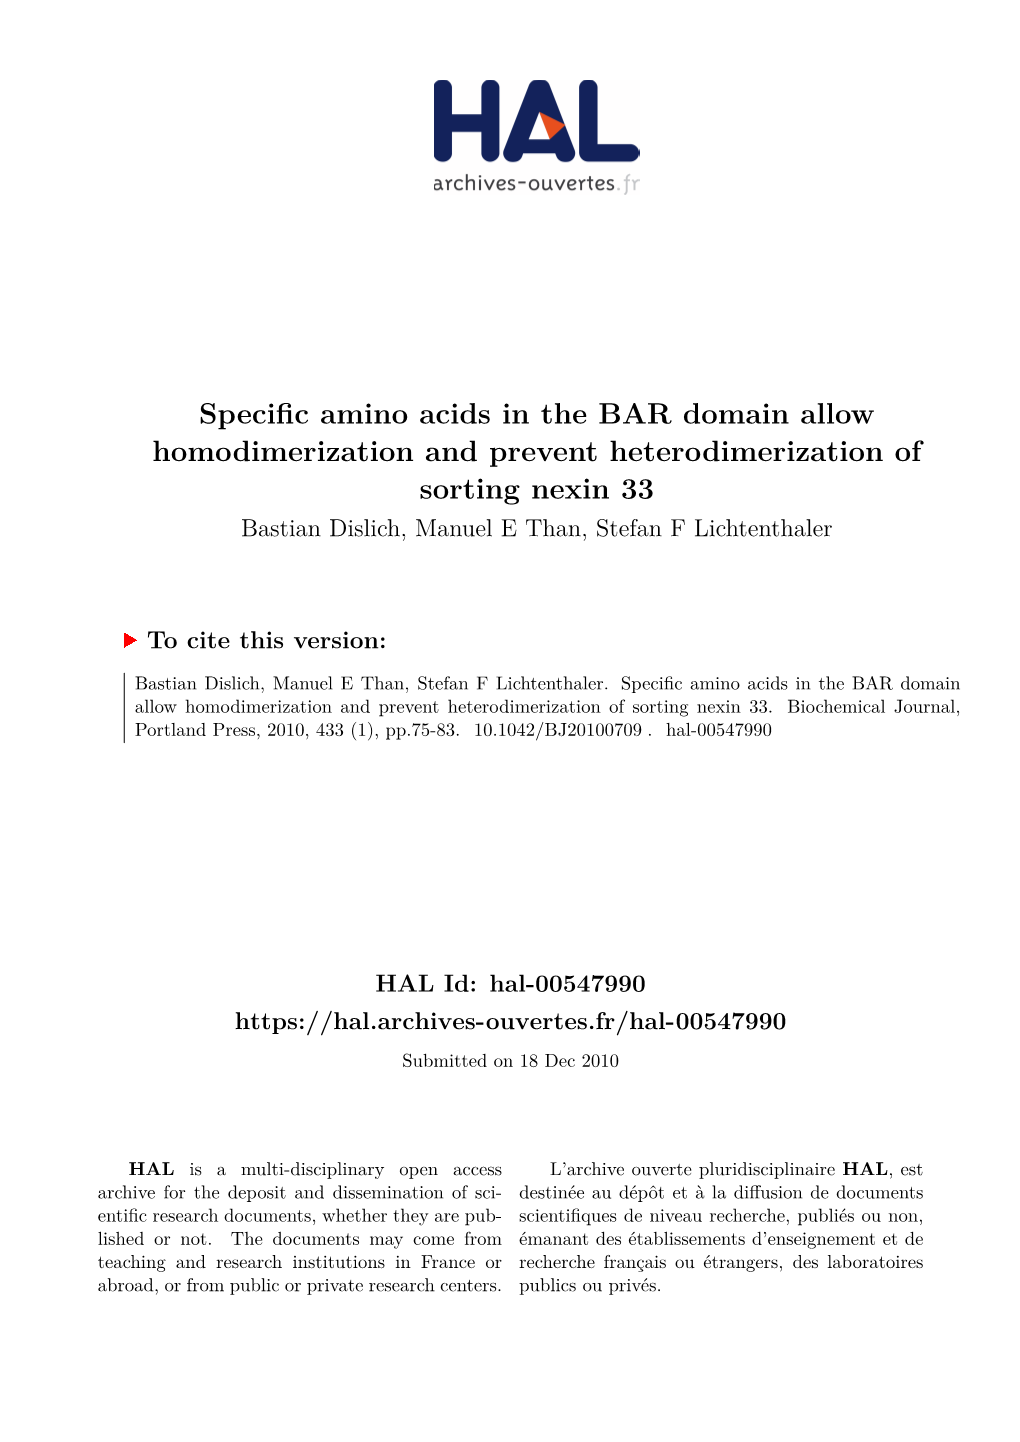 Specific Amino Acids in the BAR Domain Allow Homodimerization